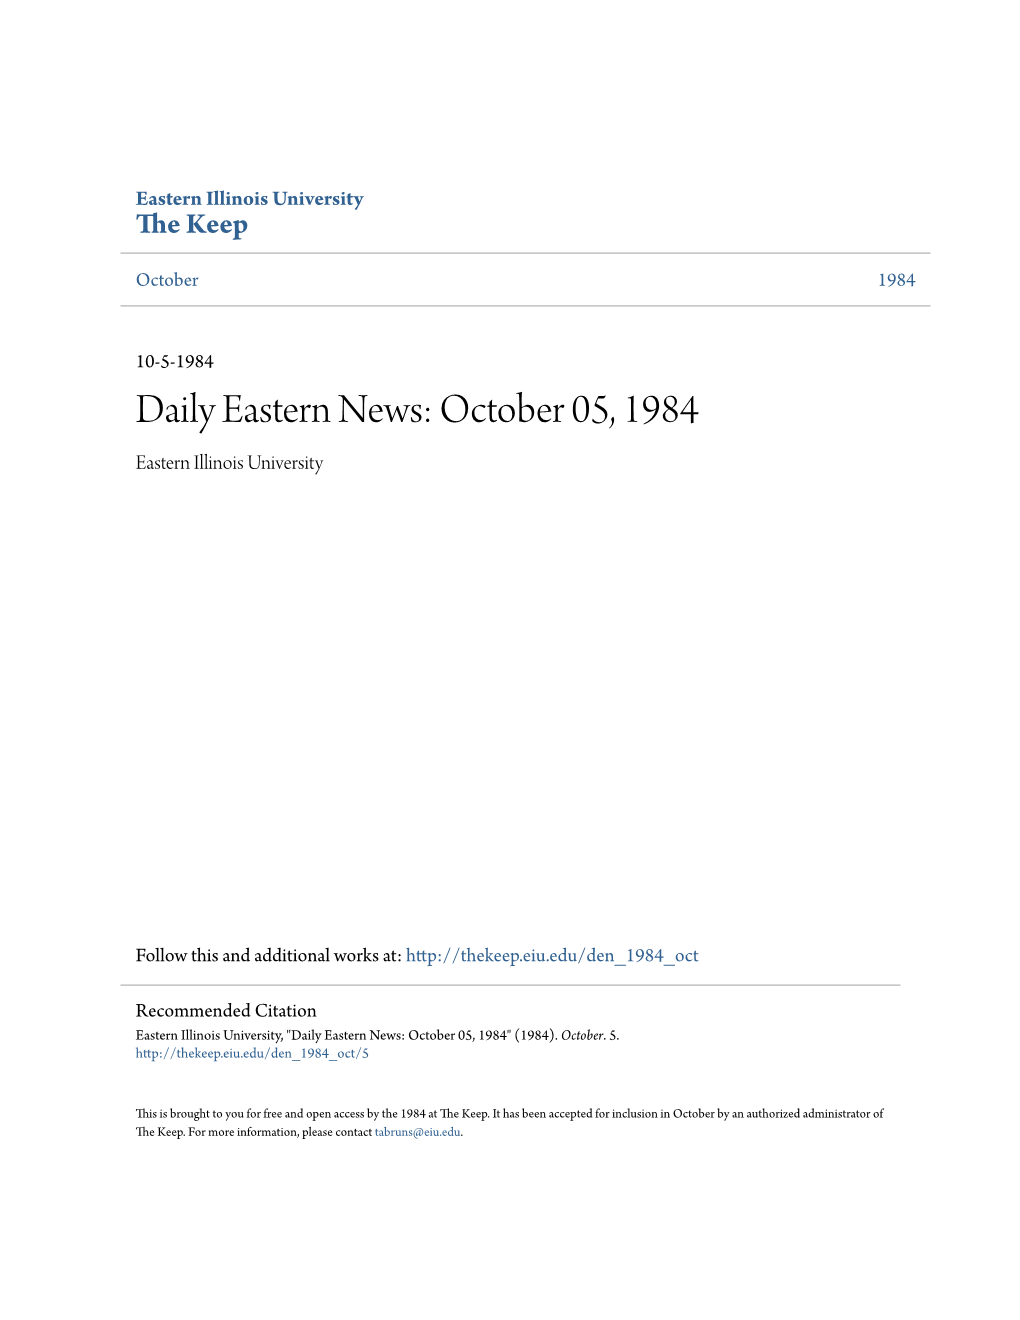 Astern News: October 05, 1984 Eastern Illinois University